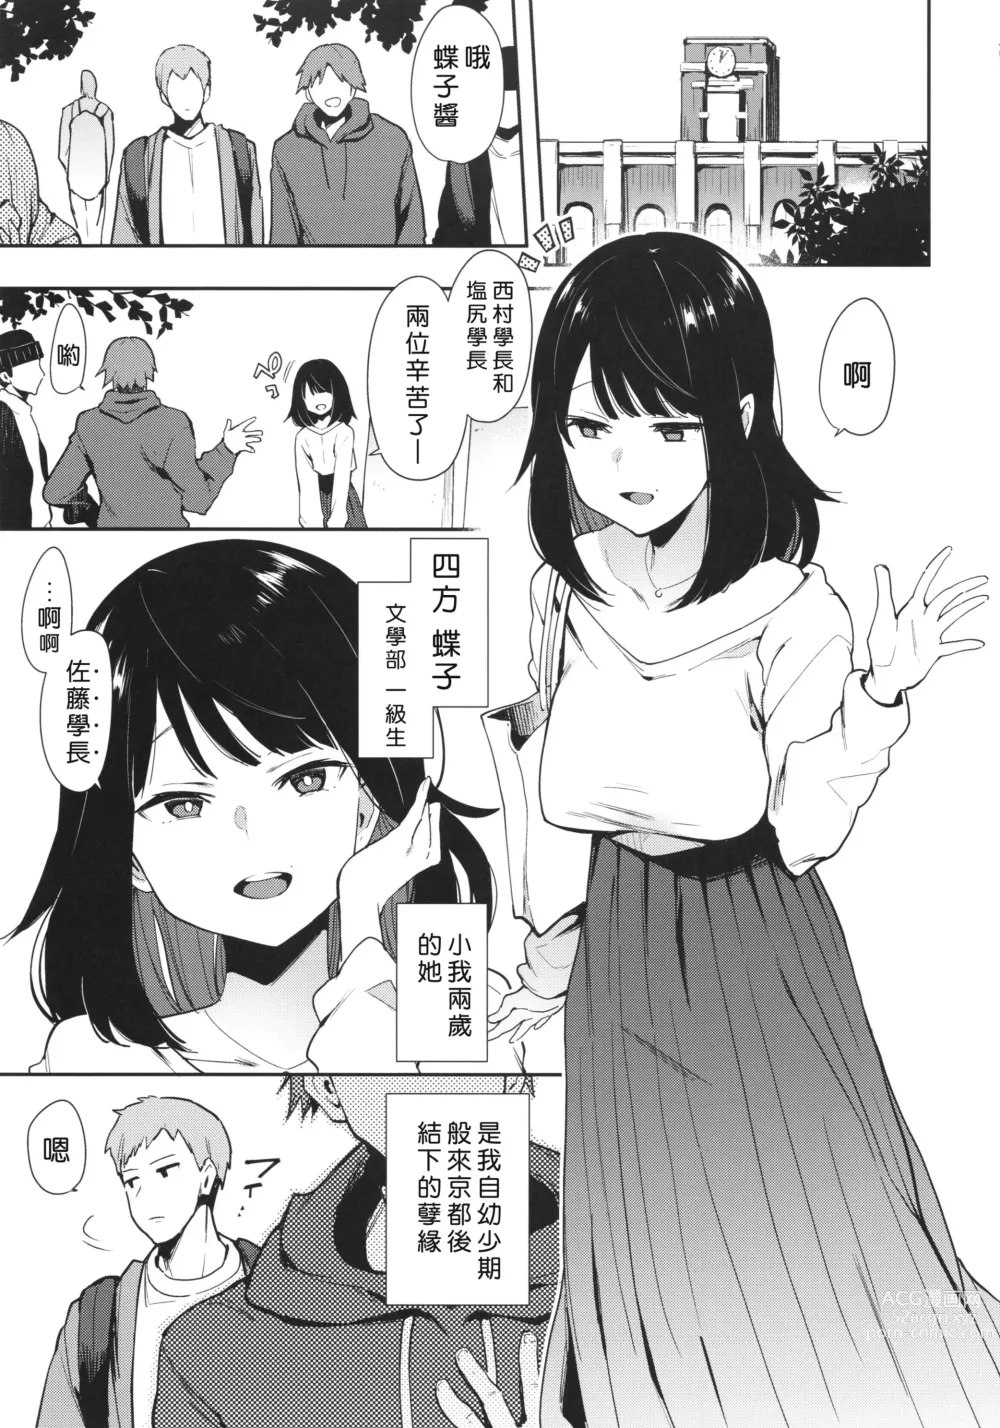 Page 4 of doujinshi Chouko I-V